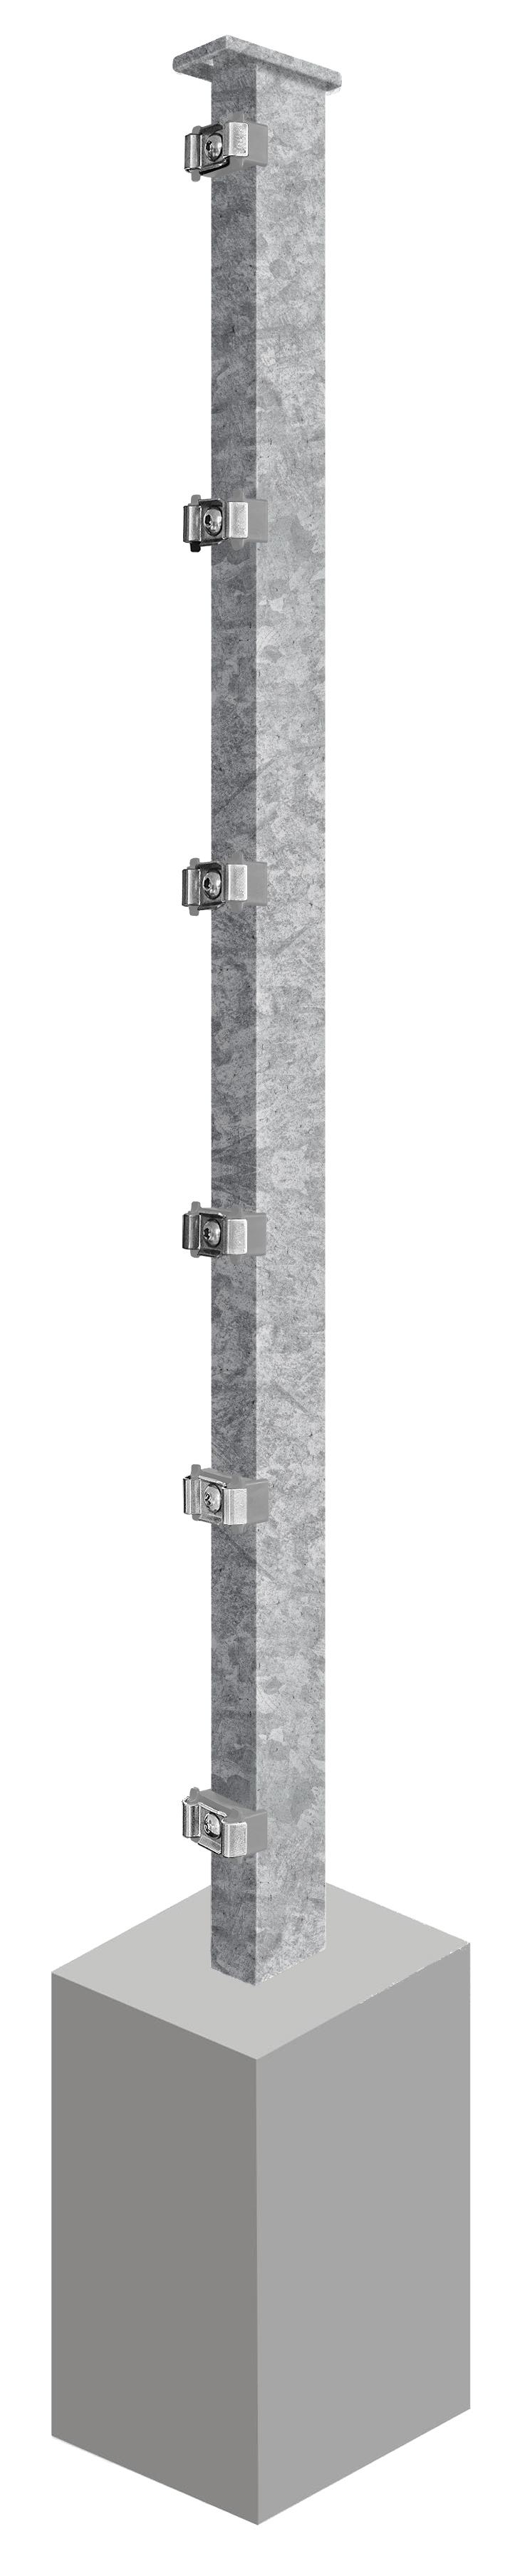 Pfosten System AC-Typ PSLF, für Zaunhöhe 0.630 mm